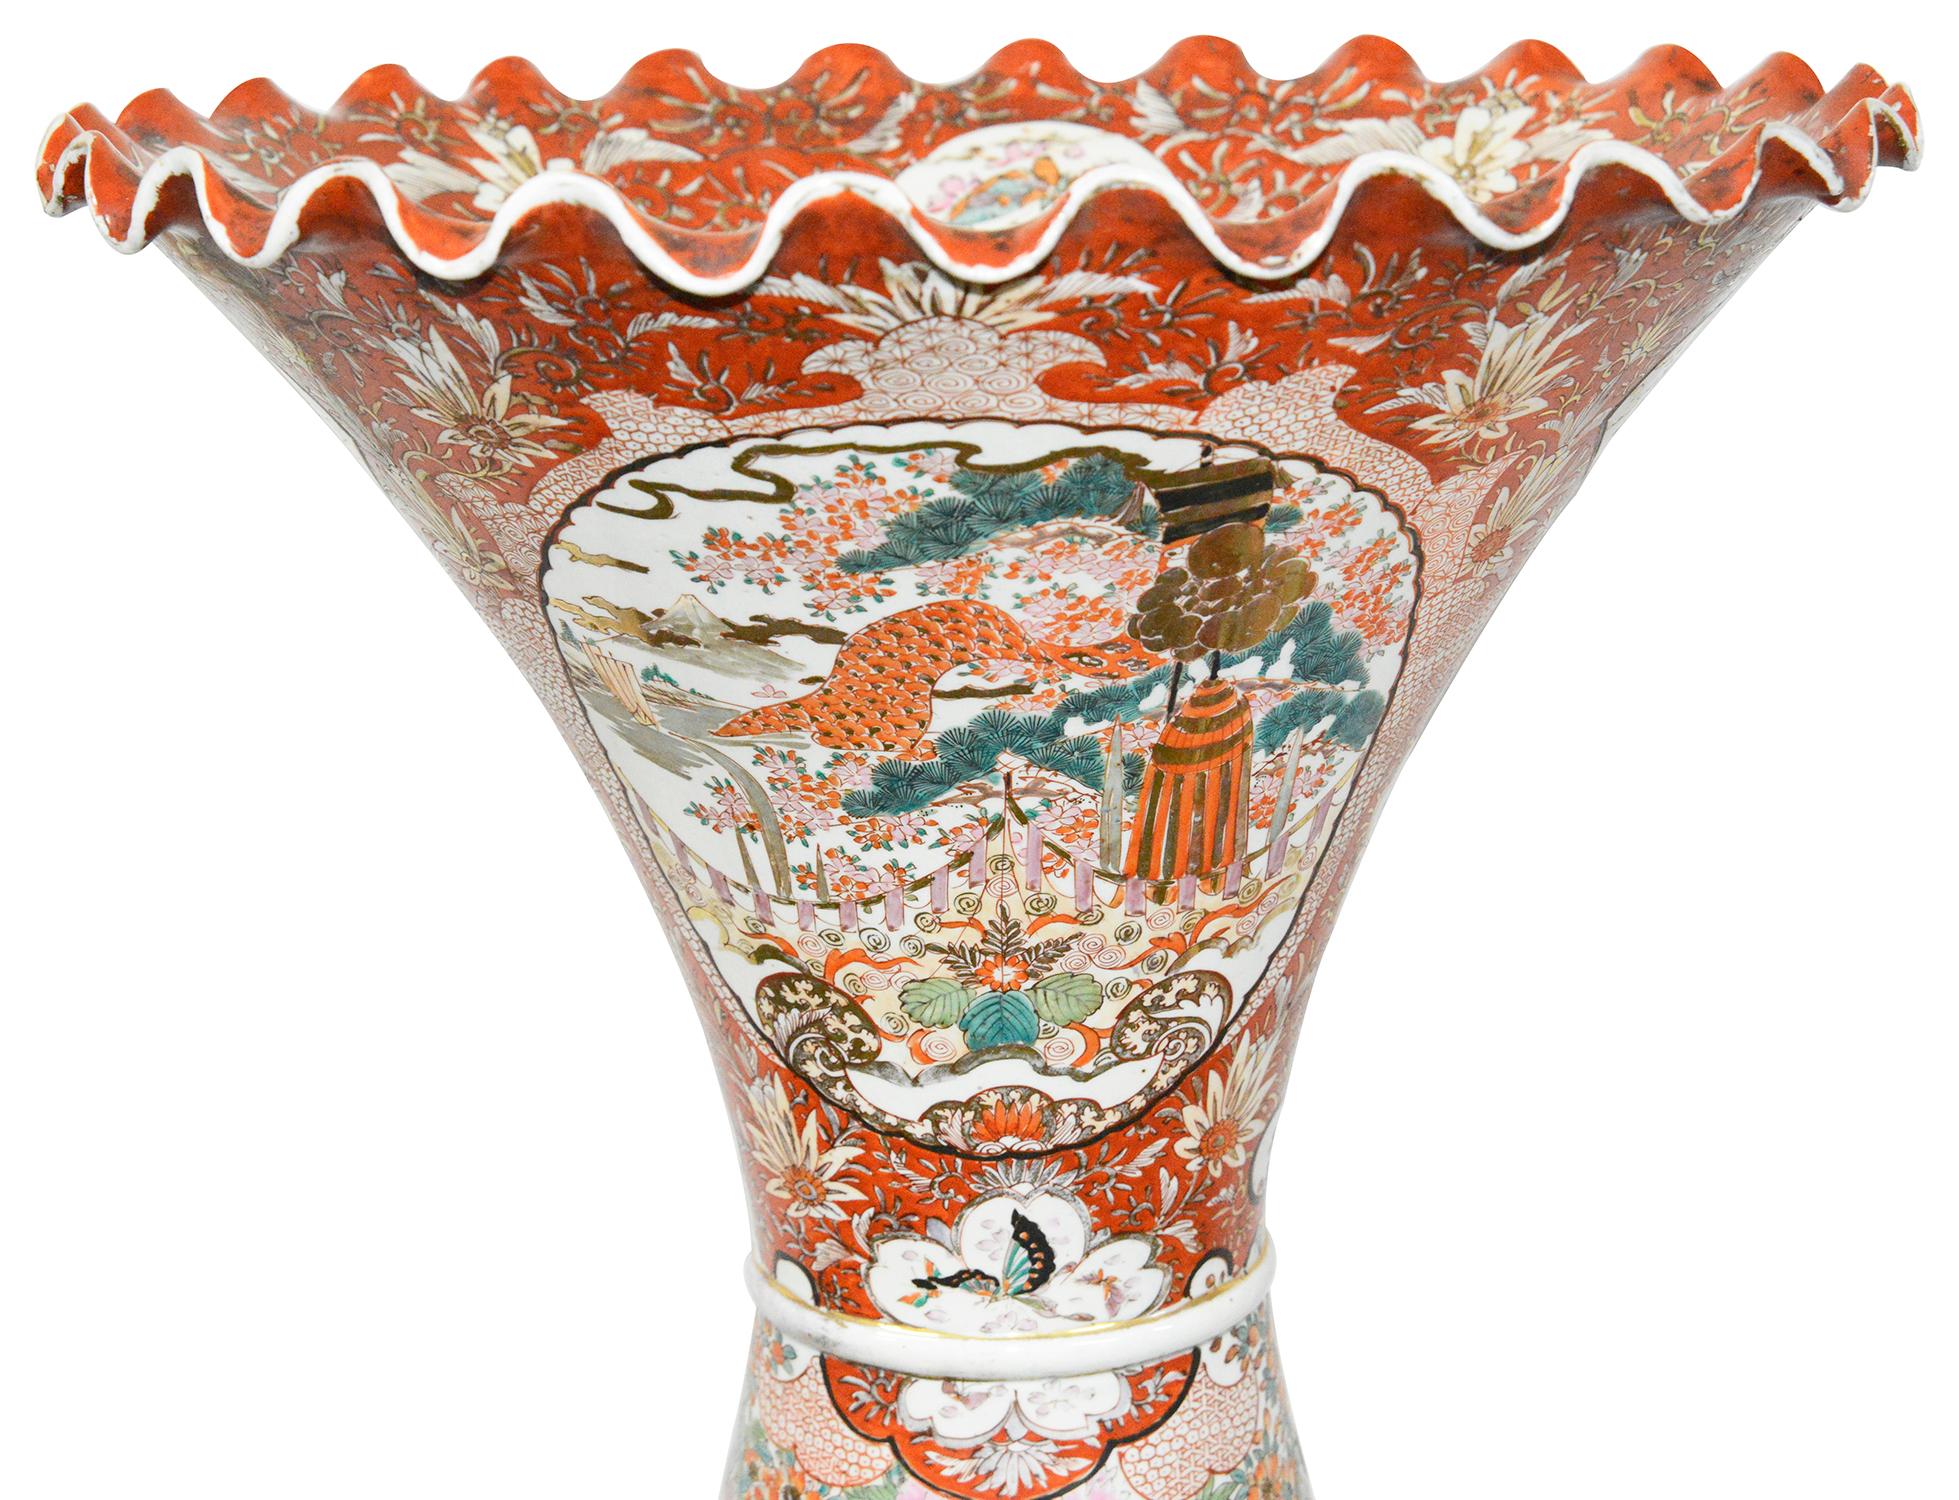 Ein großes und beeindruckendes Paar japanischer Katani-Porzellanvasen aus der Meiji-Periode (1868-1912) mit wunderschönen handgemalten Szenen von Samurai-Kriegerstämmen, die von klassischen Motiven, exotischen Blumen und Vögeln eingerahmt werden.